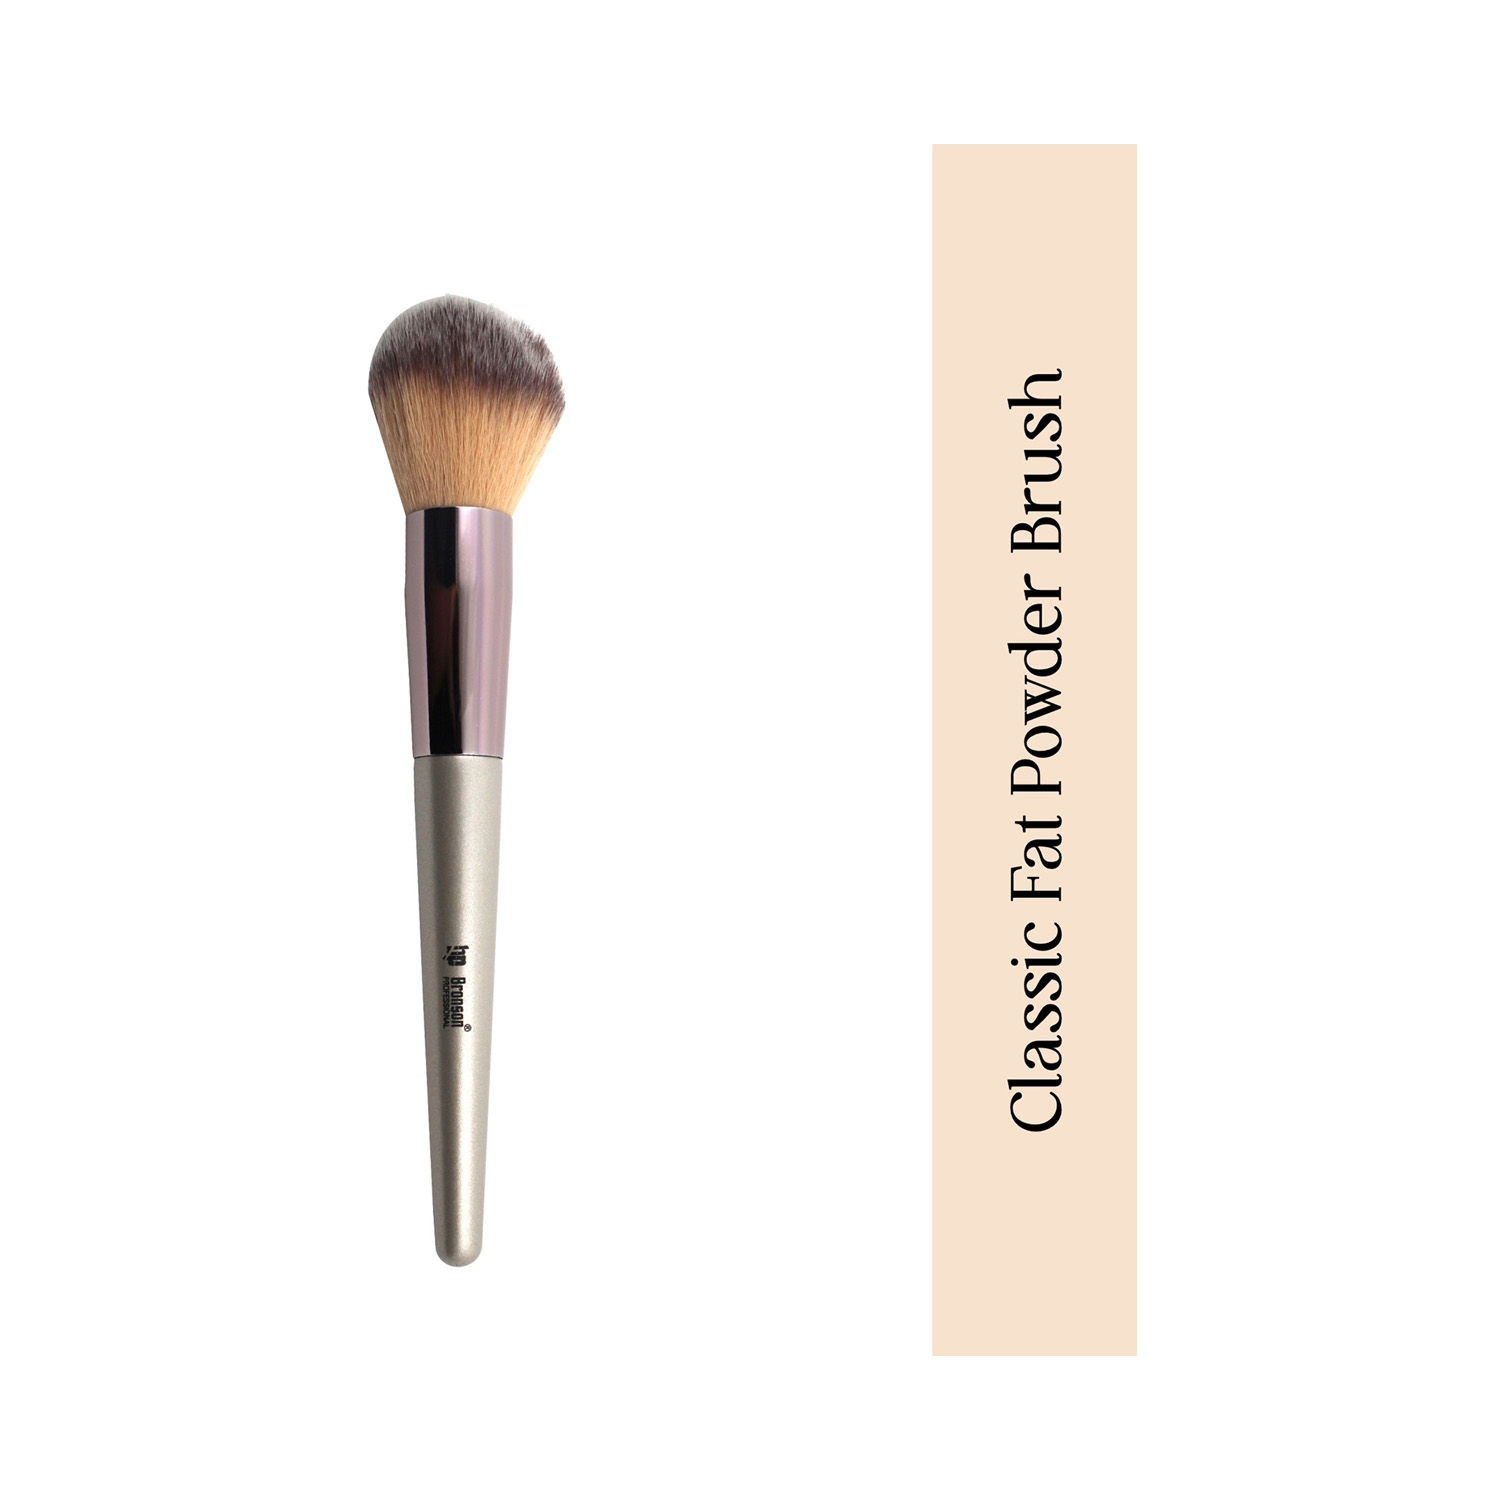 Bronson Professional | Bronson Professional Classic Fat Powder Makeup Brush - Silver, Pink